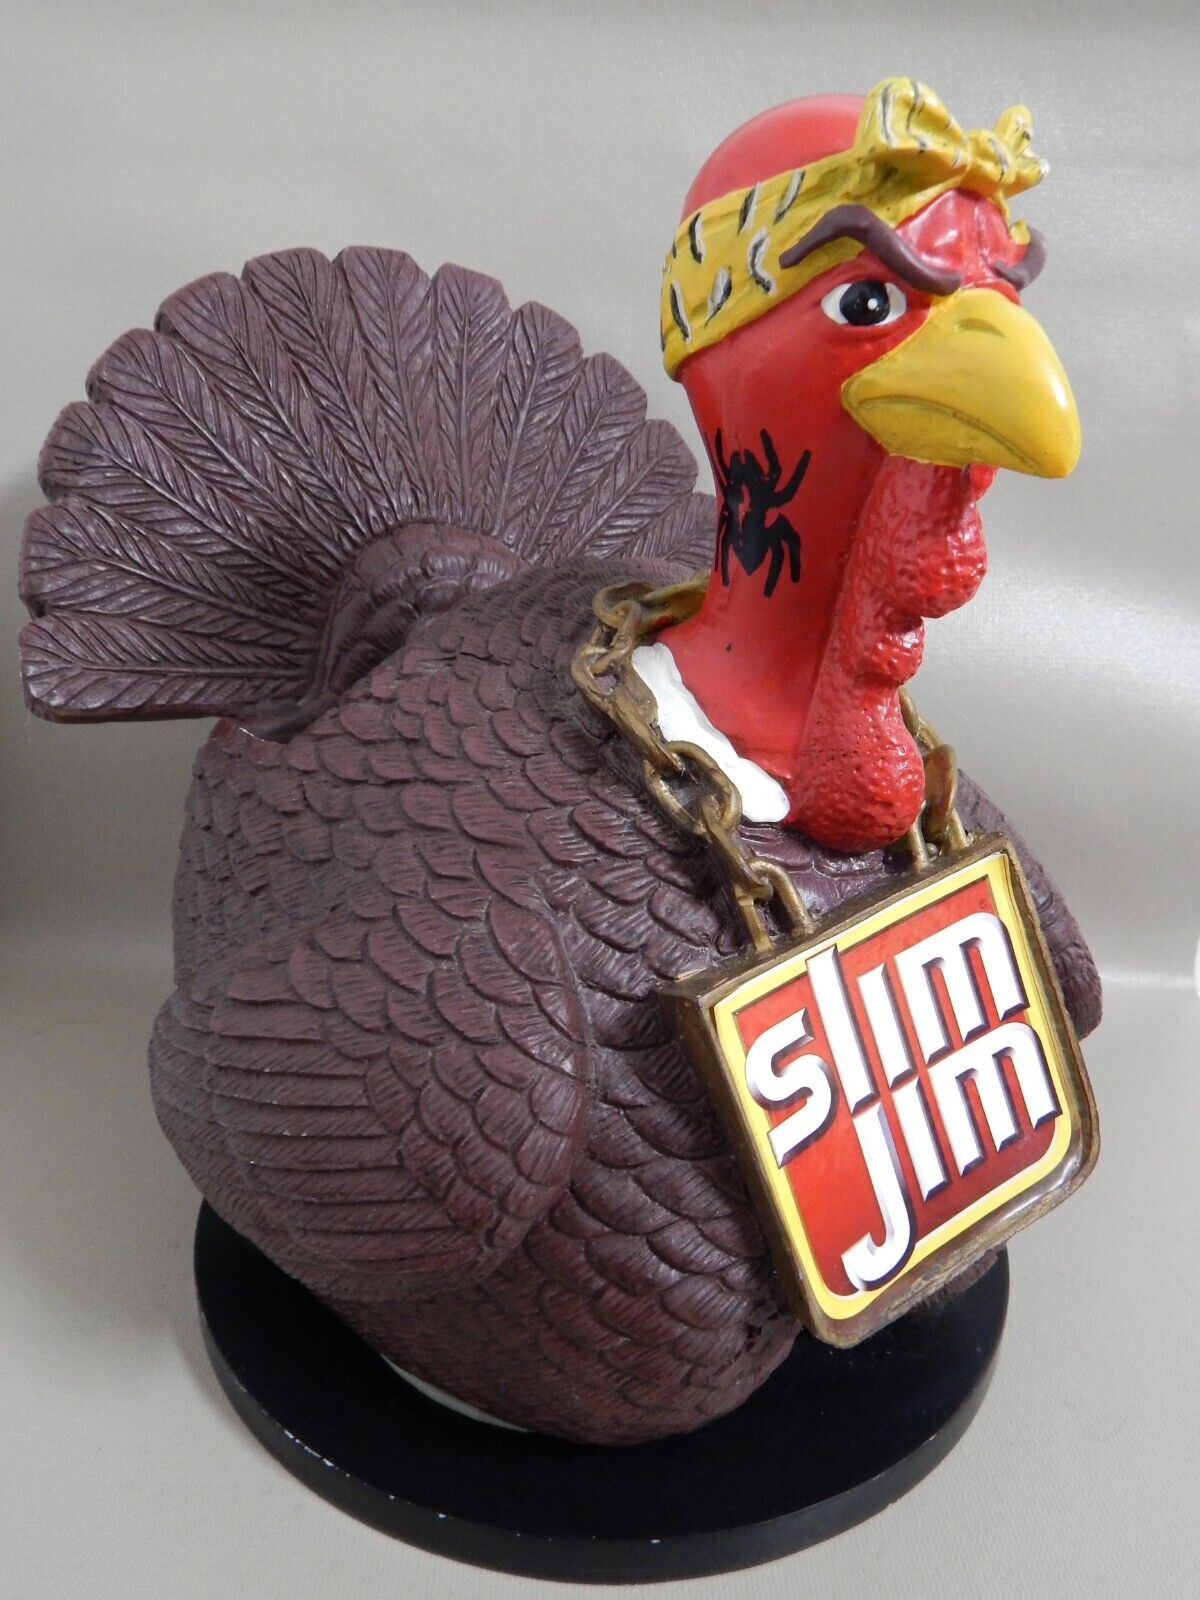 SLIM JIM Gangsta Tough Turkey Counter Top Display Advertising Figure RARE HTF GC